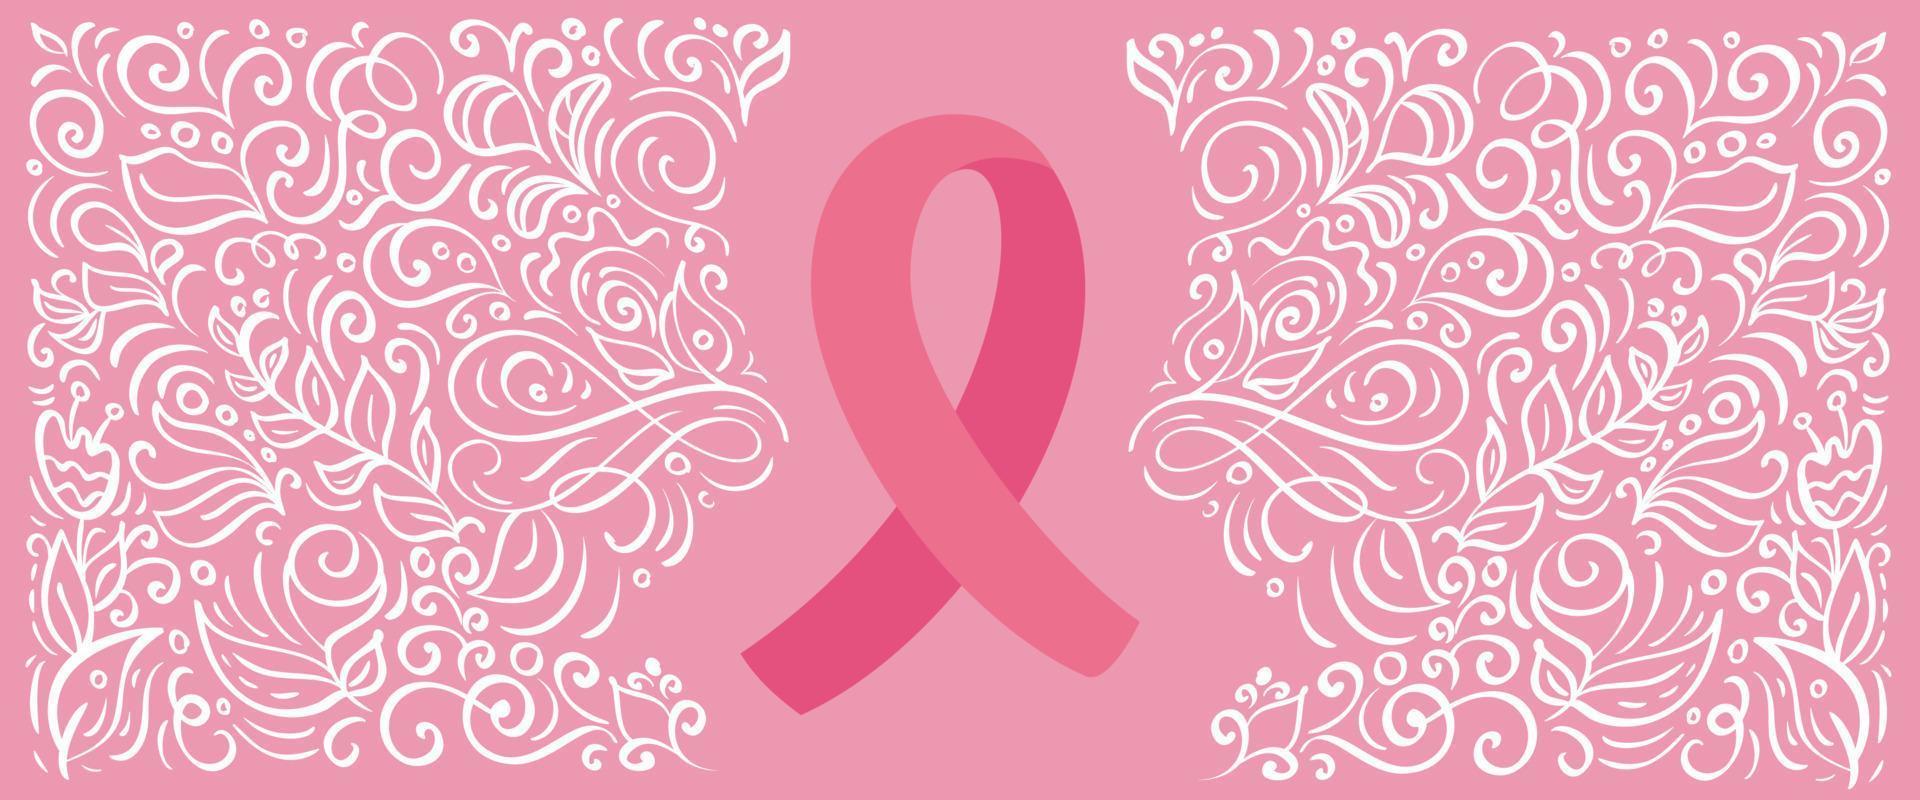 stiliserad rosa vektor banner band av bröst canser för oktober är cancer medvetenhet månad. kalligrafi illustration på rosa blomstra bakgrund